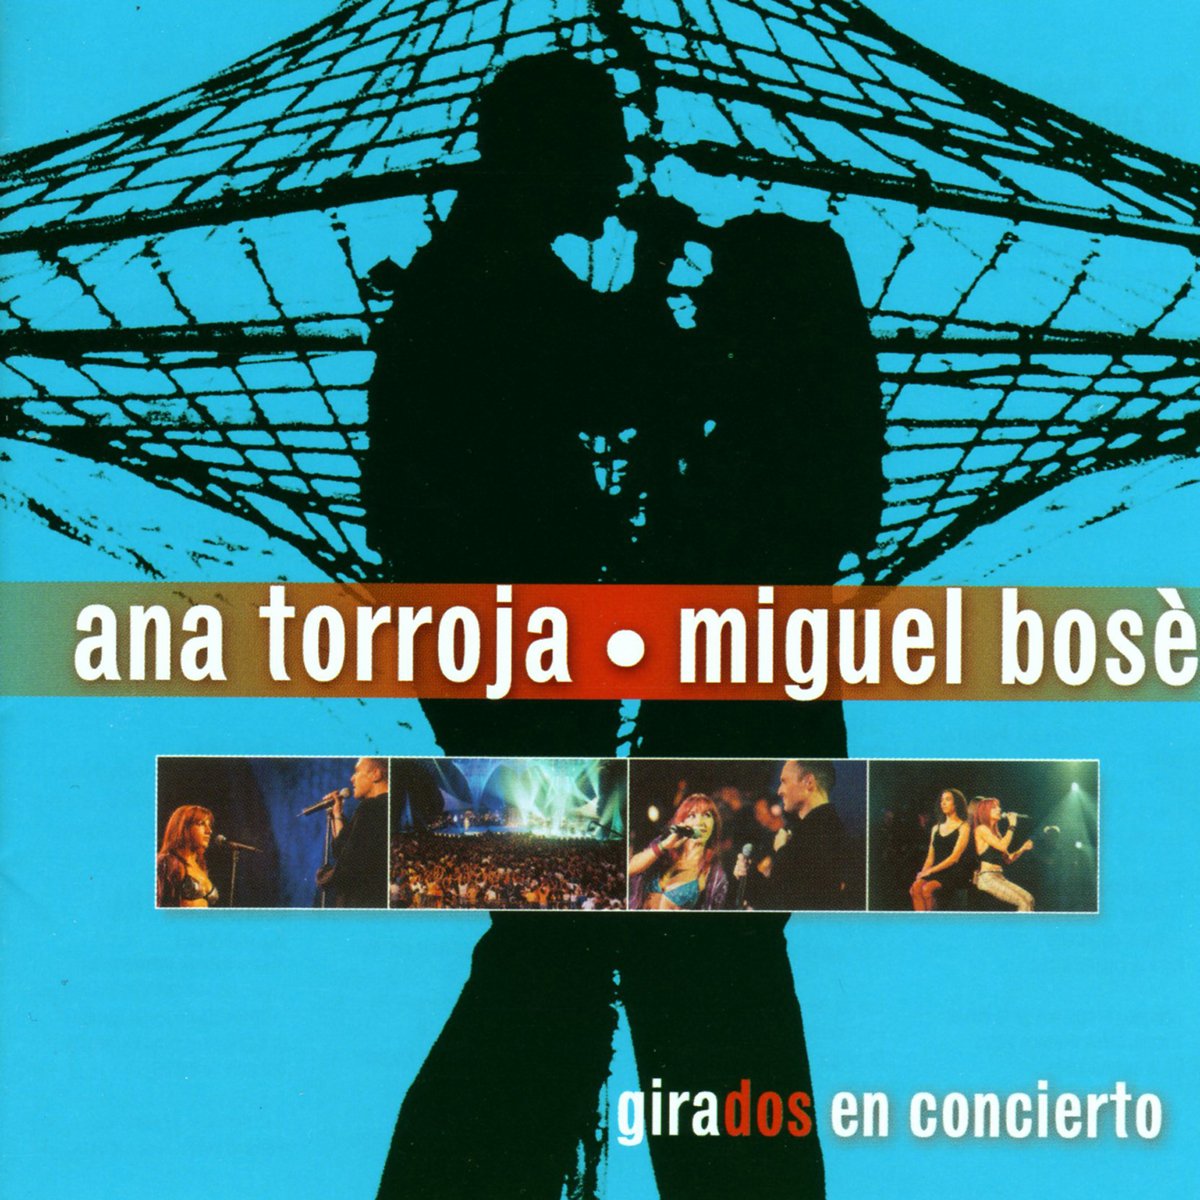 Cd+Dvd Miguel Bose & Ana Torroja Girados